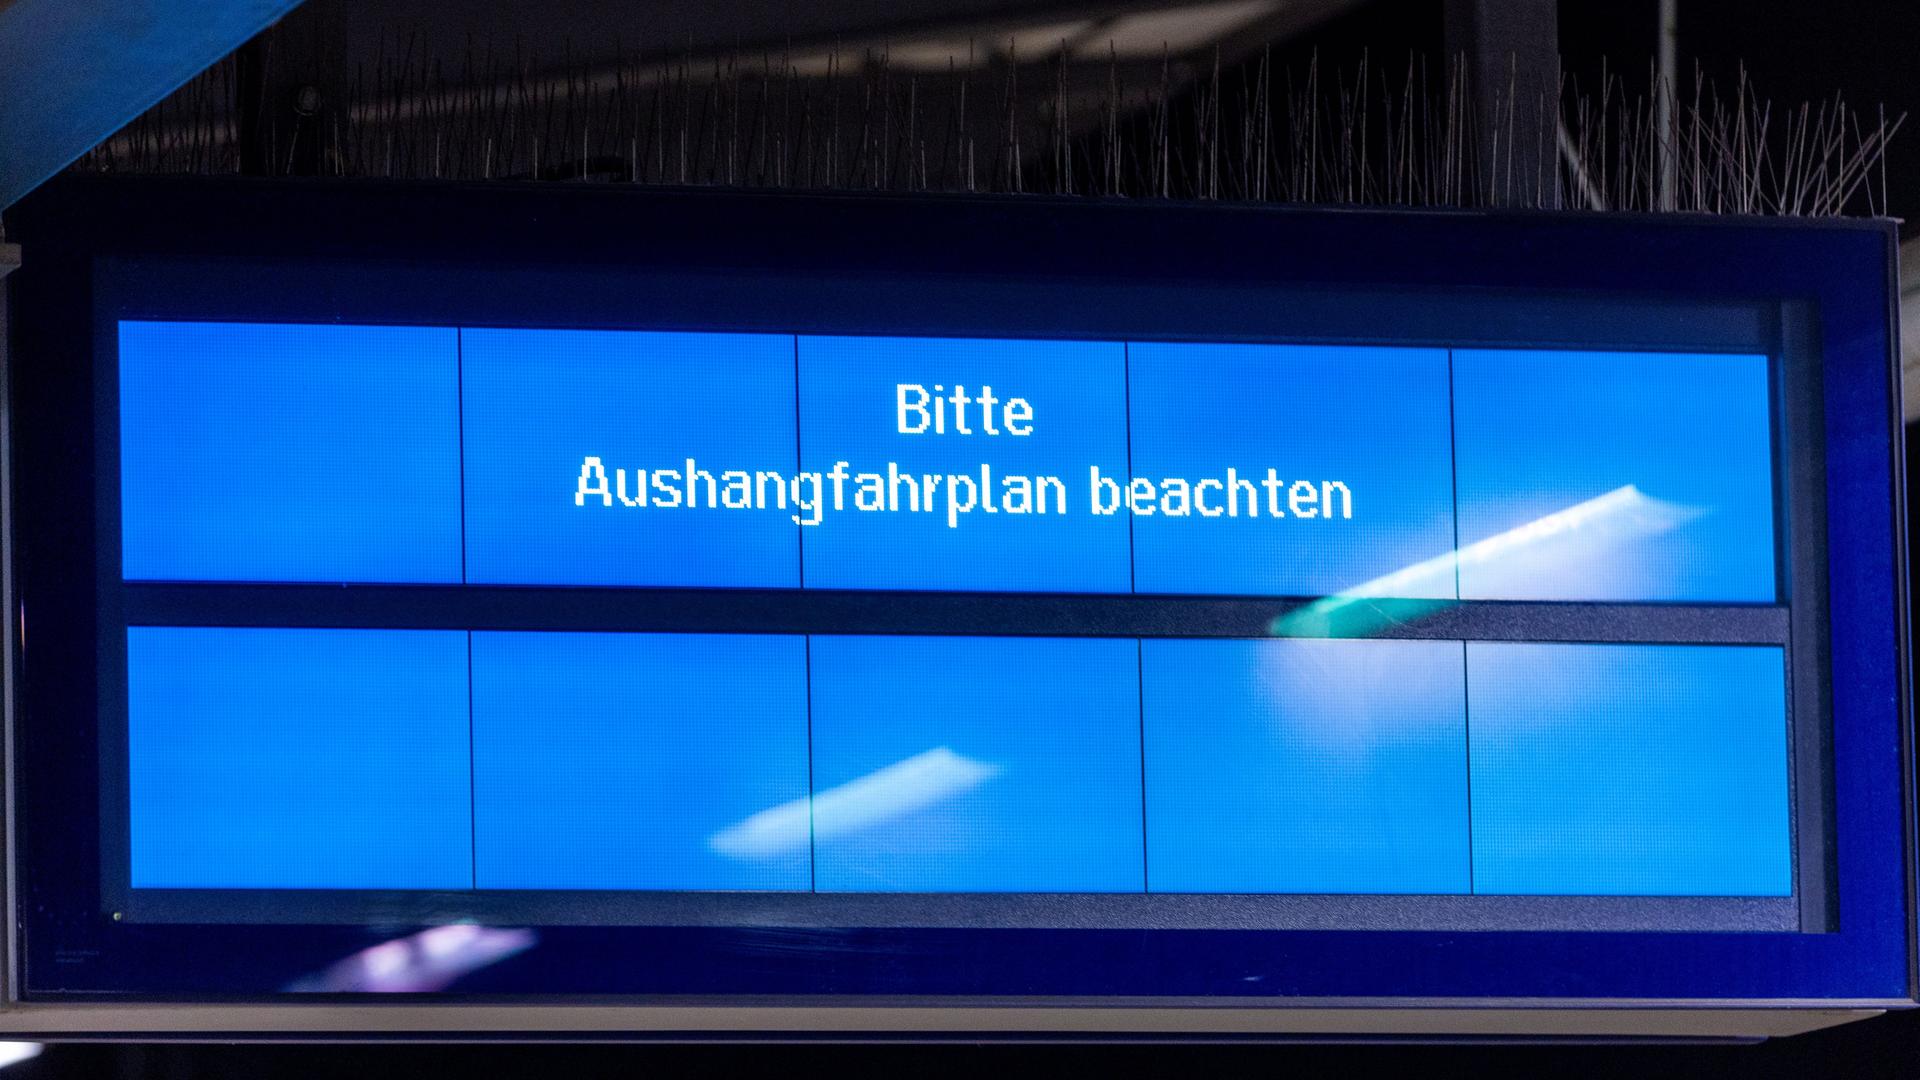 Auf einer Anzeigetafel im Hauptbahnhof ist der Schriftzug "Bitte Aushangfahrplan beachten" zu sehen.